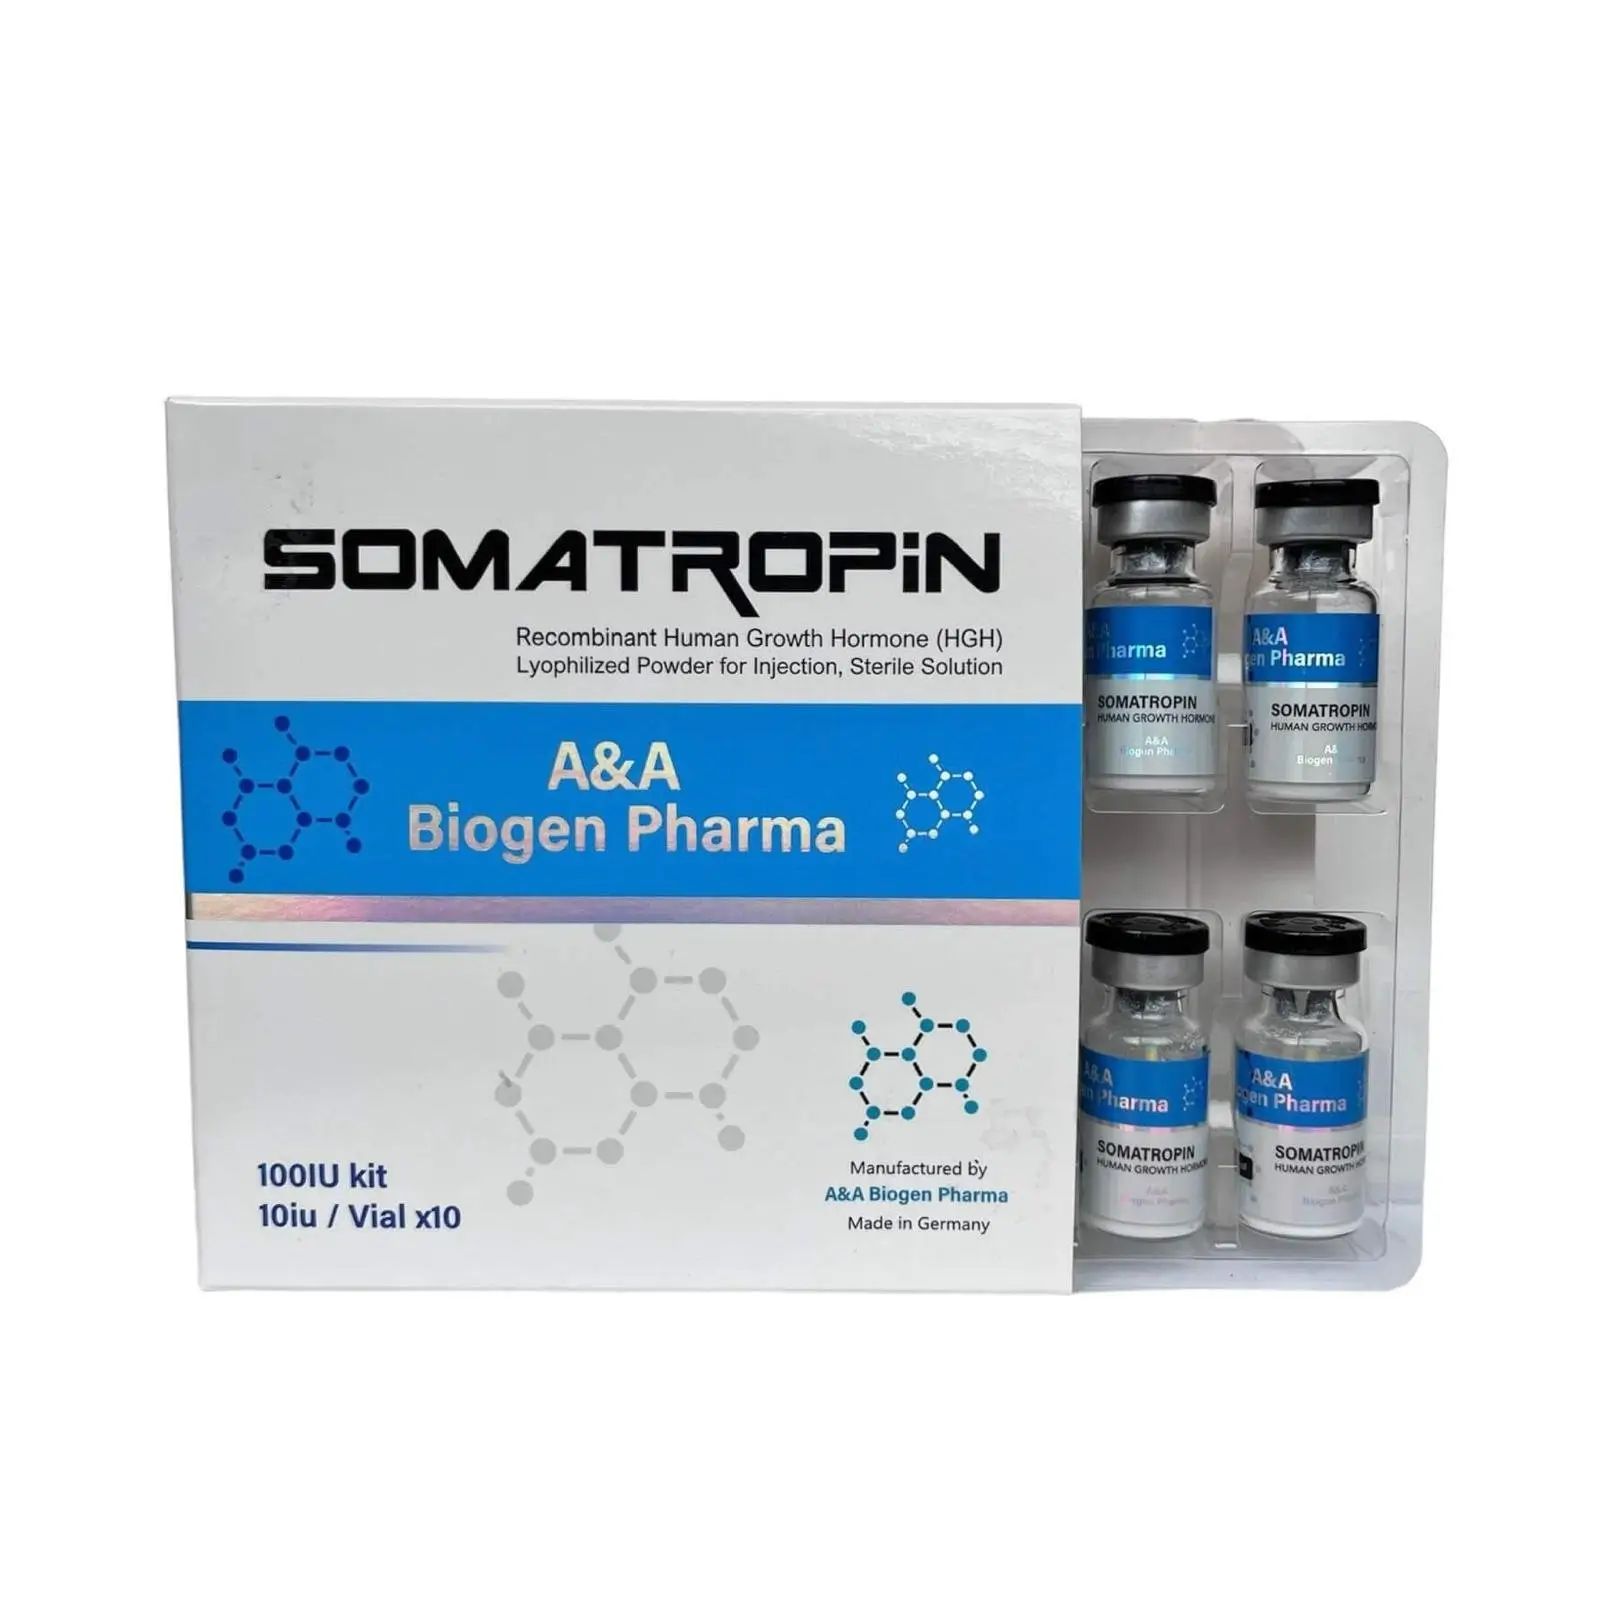 a&a biogen pharma somatropin hgh supplement kit